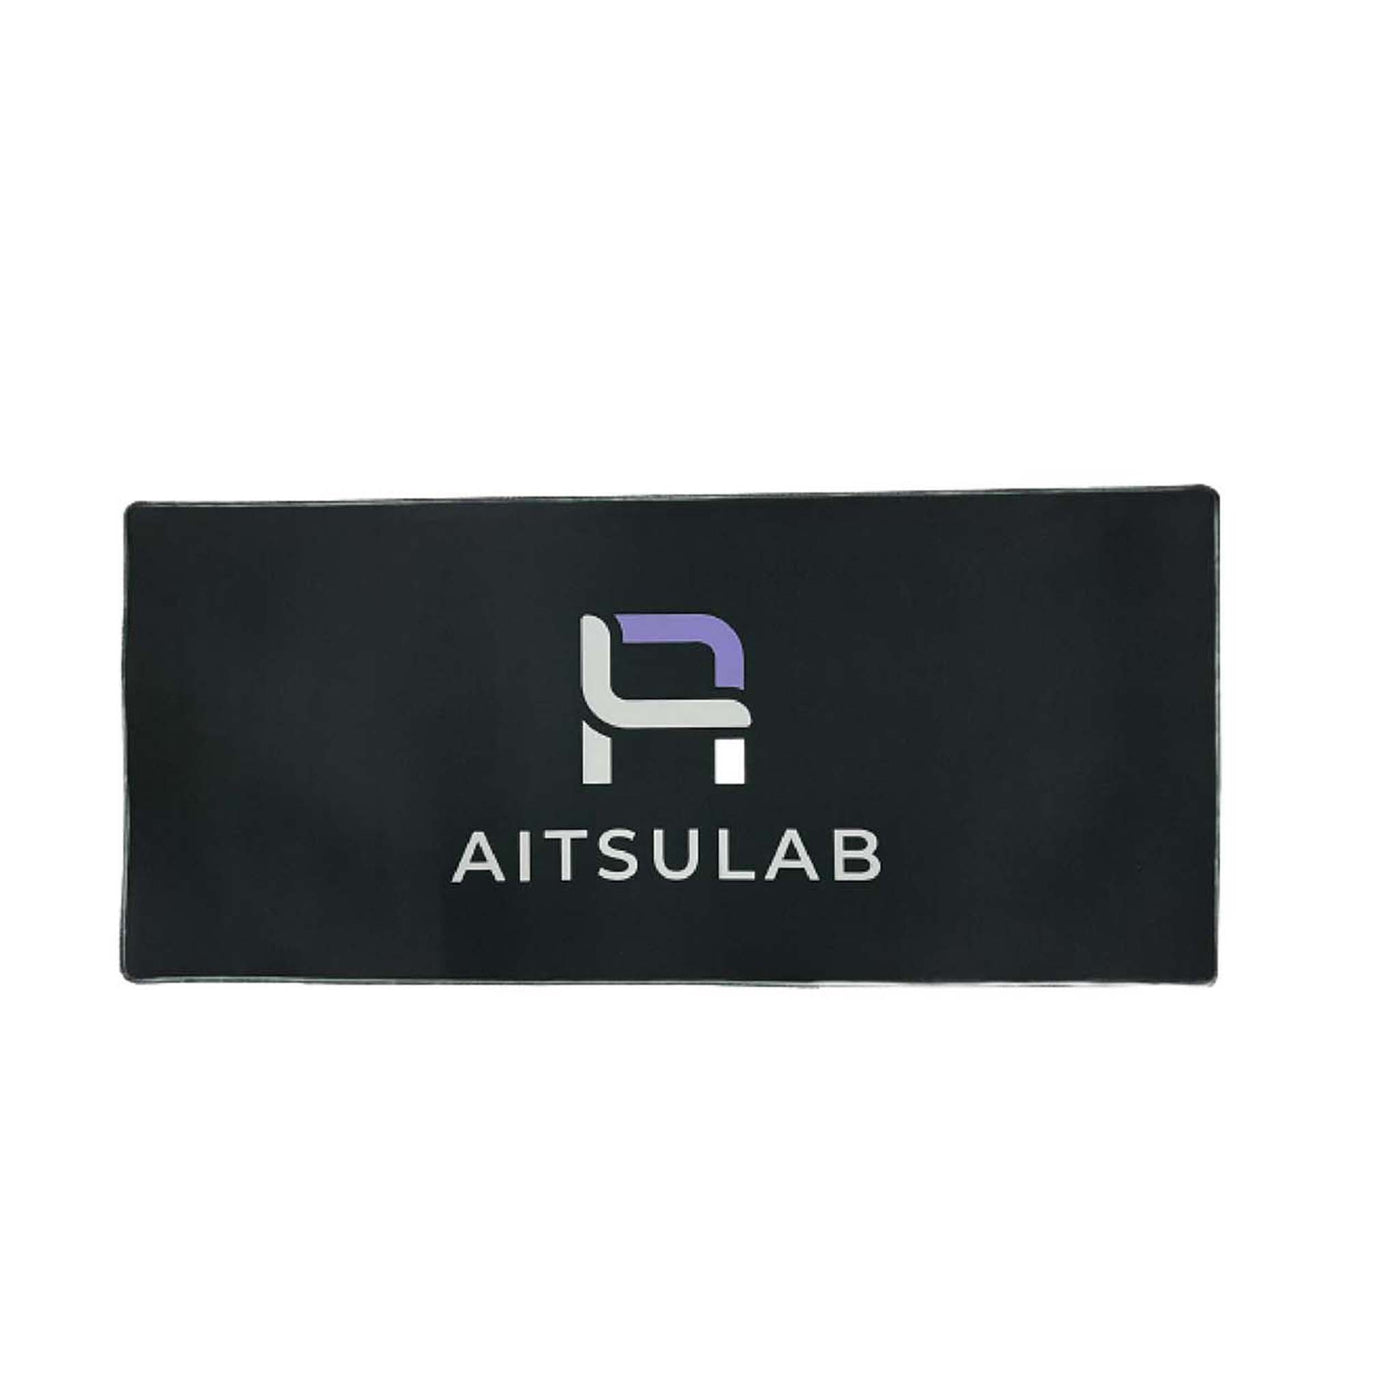 AITSULAB logos